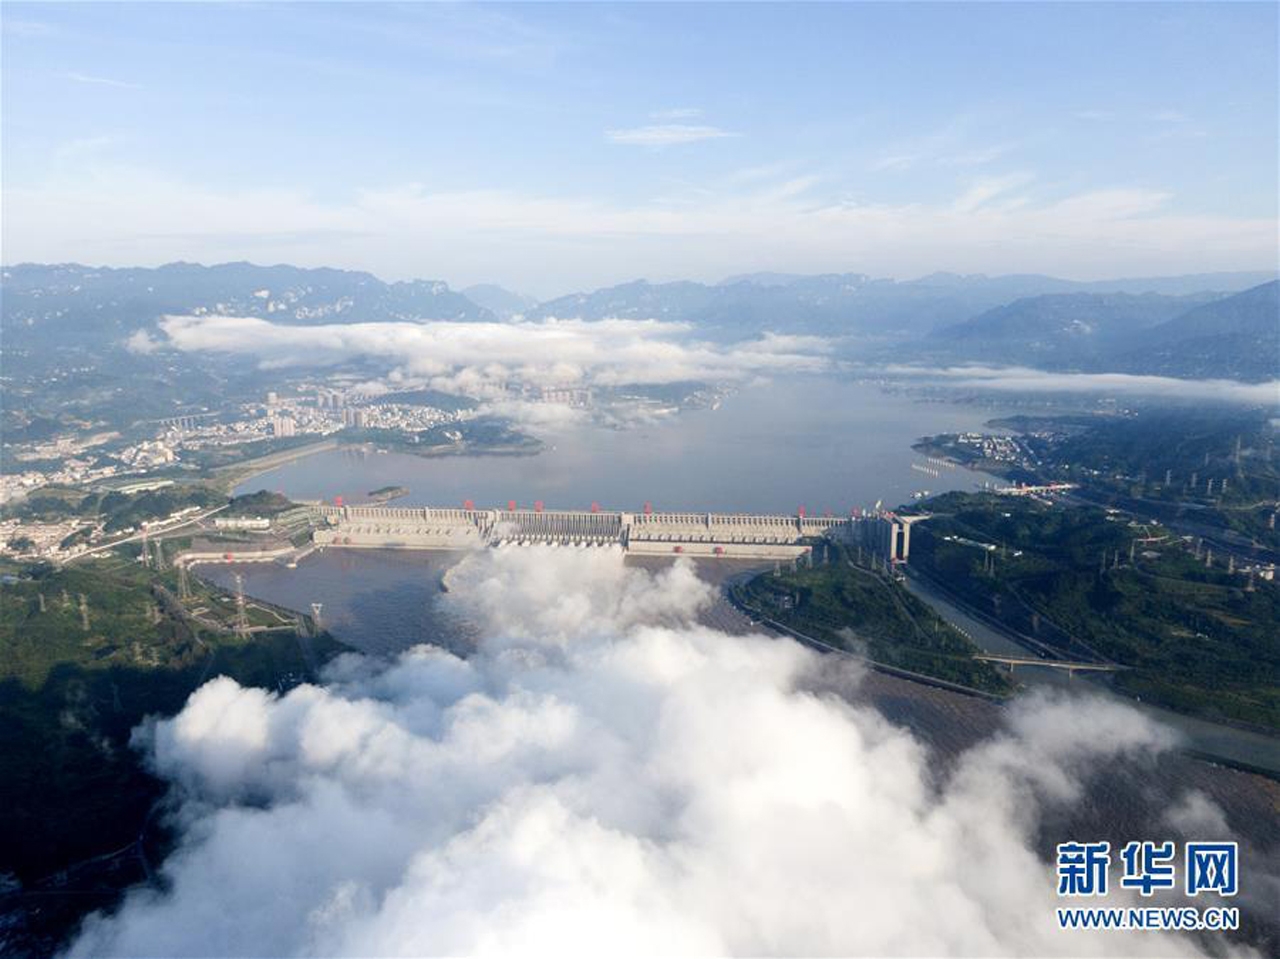 ▲ 연일 엄청난 물을 방류 중인 싼샤 댐(사진: 중국 신화통신)